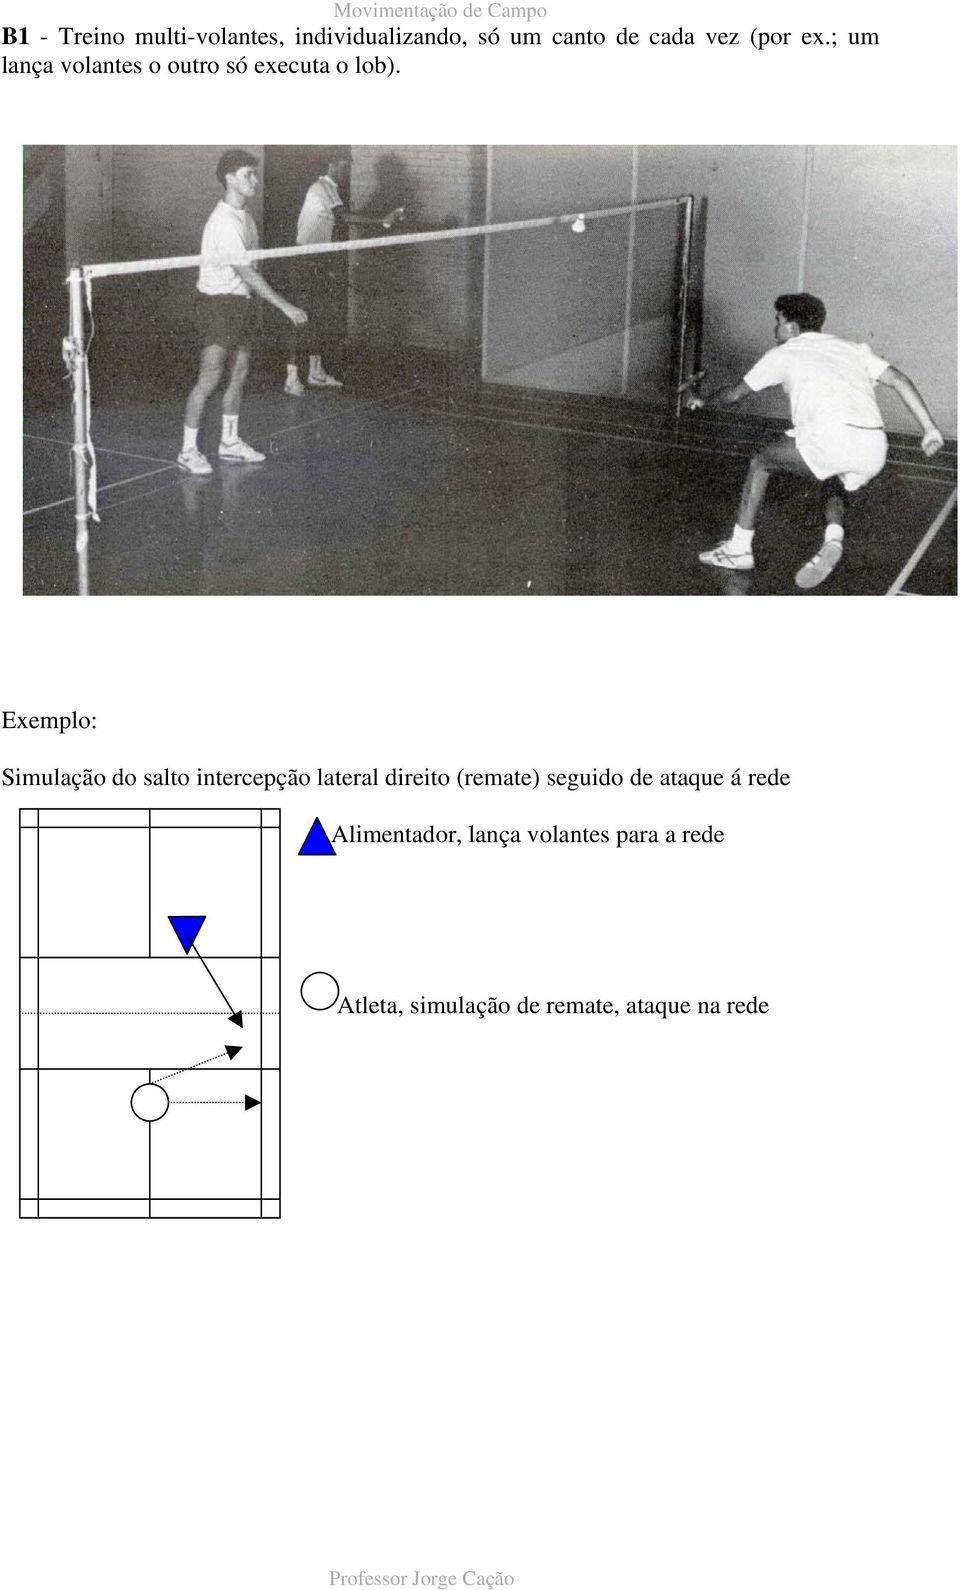 Exemplo: Simulação do salto intercepção lateral direito (remate) seguido